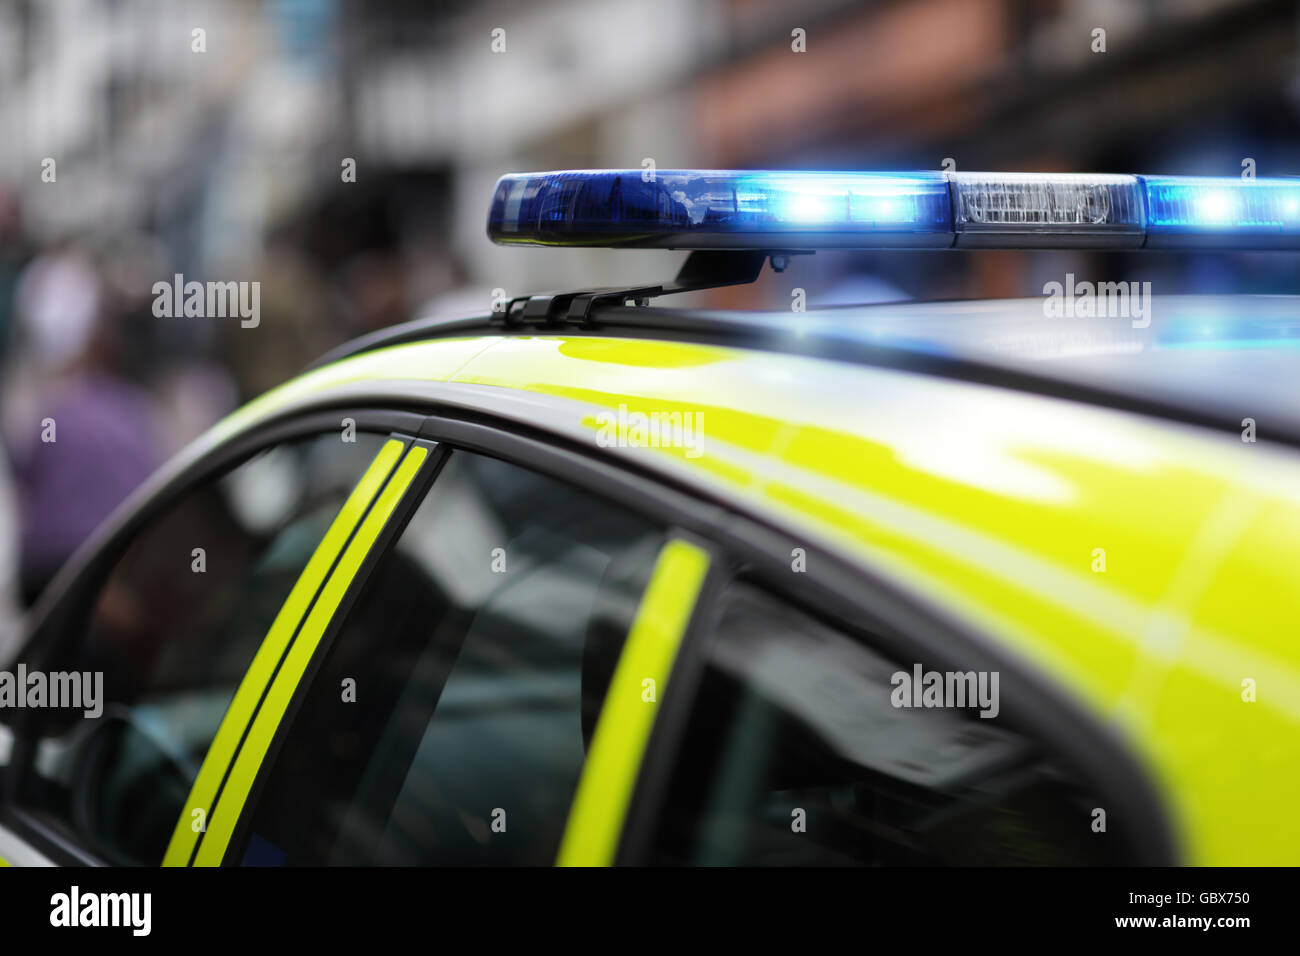 Polizeisirene blau Blaulicht bei Unfall oder Verbrechen-Szene